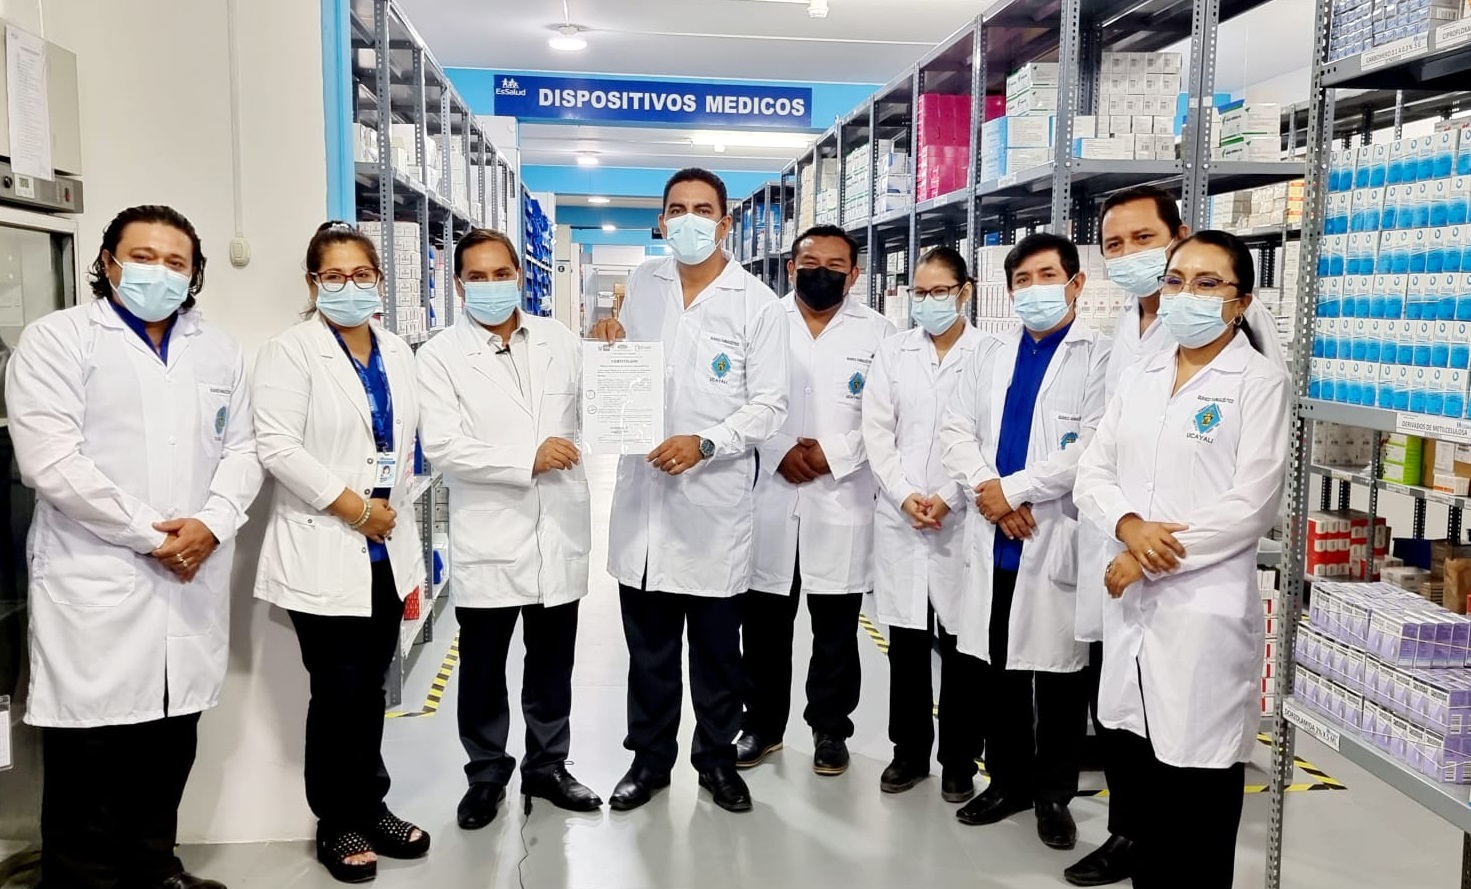 Essalud - Servicio de Farmacia de EsSalud Ucayali obtiene certificación de Buenas Prácticas